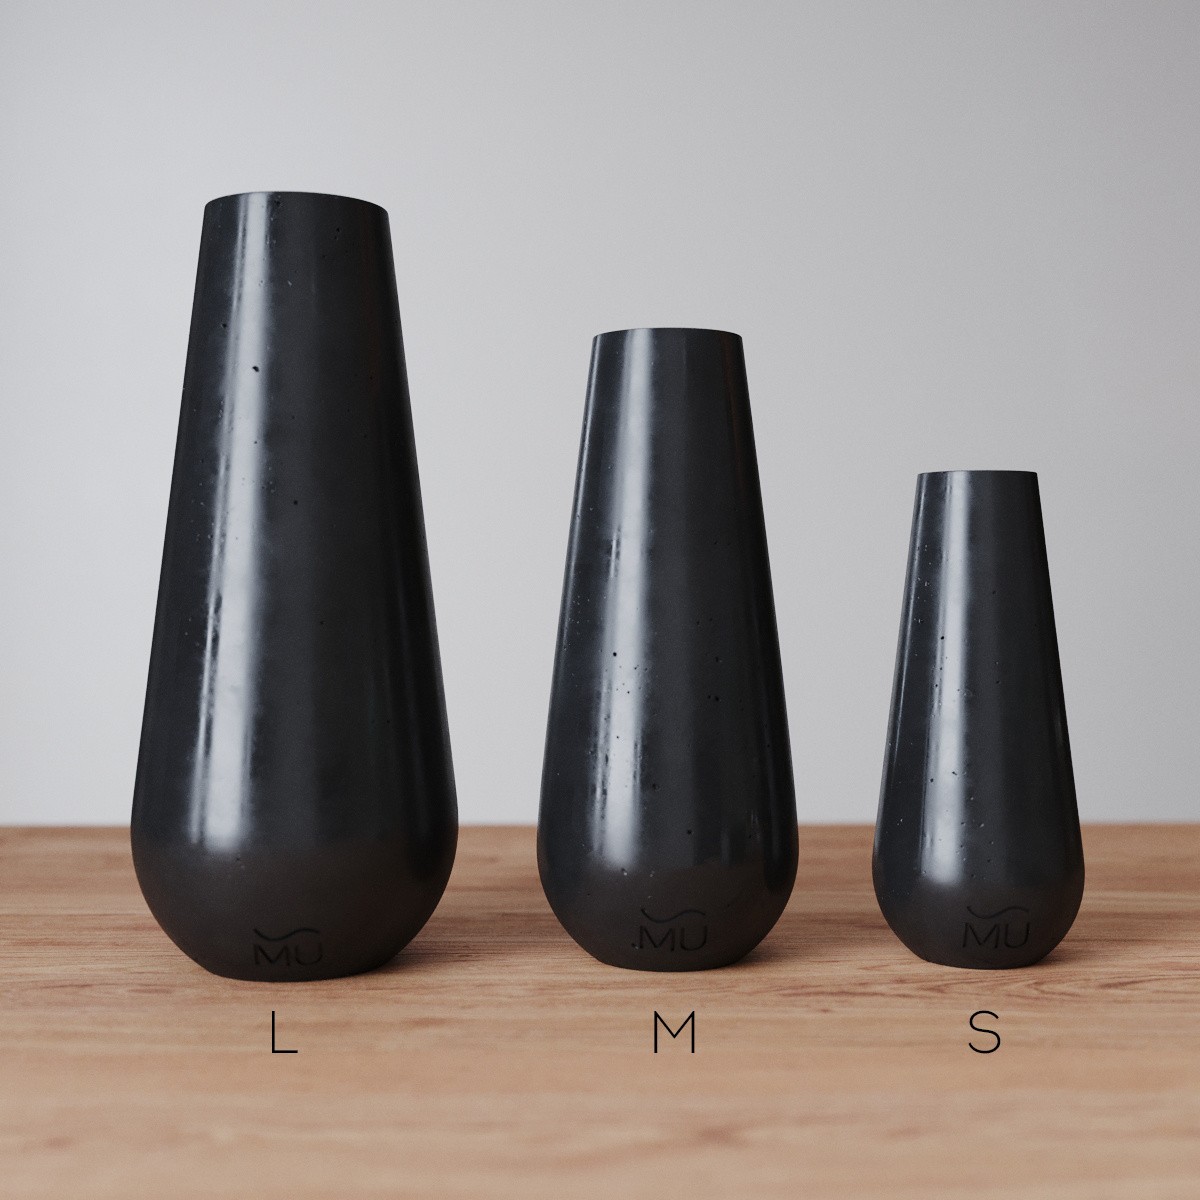 Три размера вазы Sophia